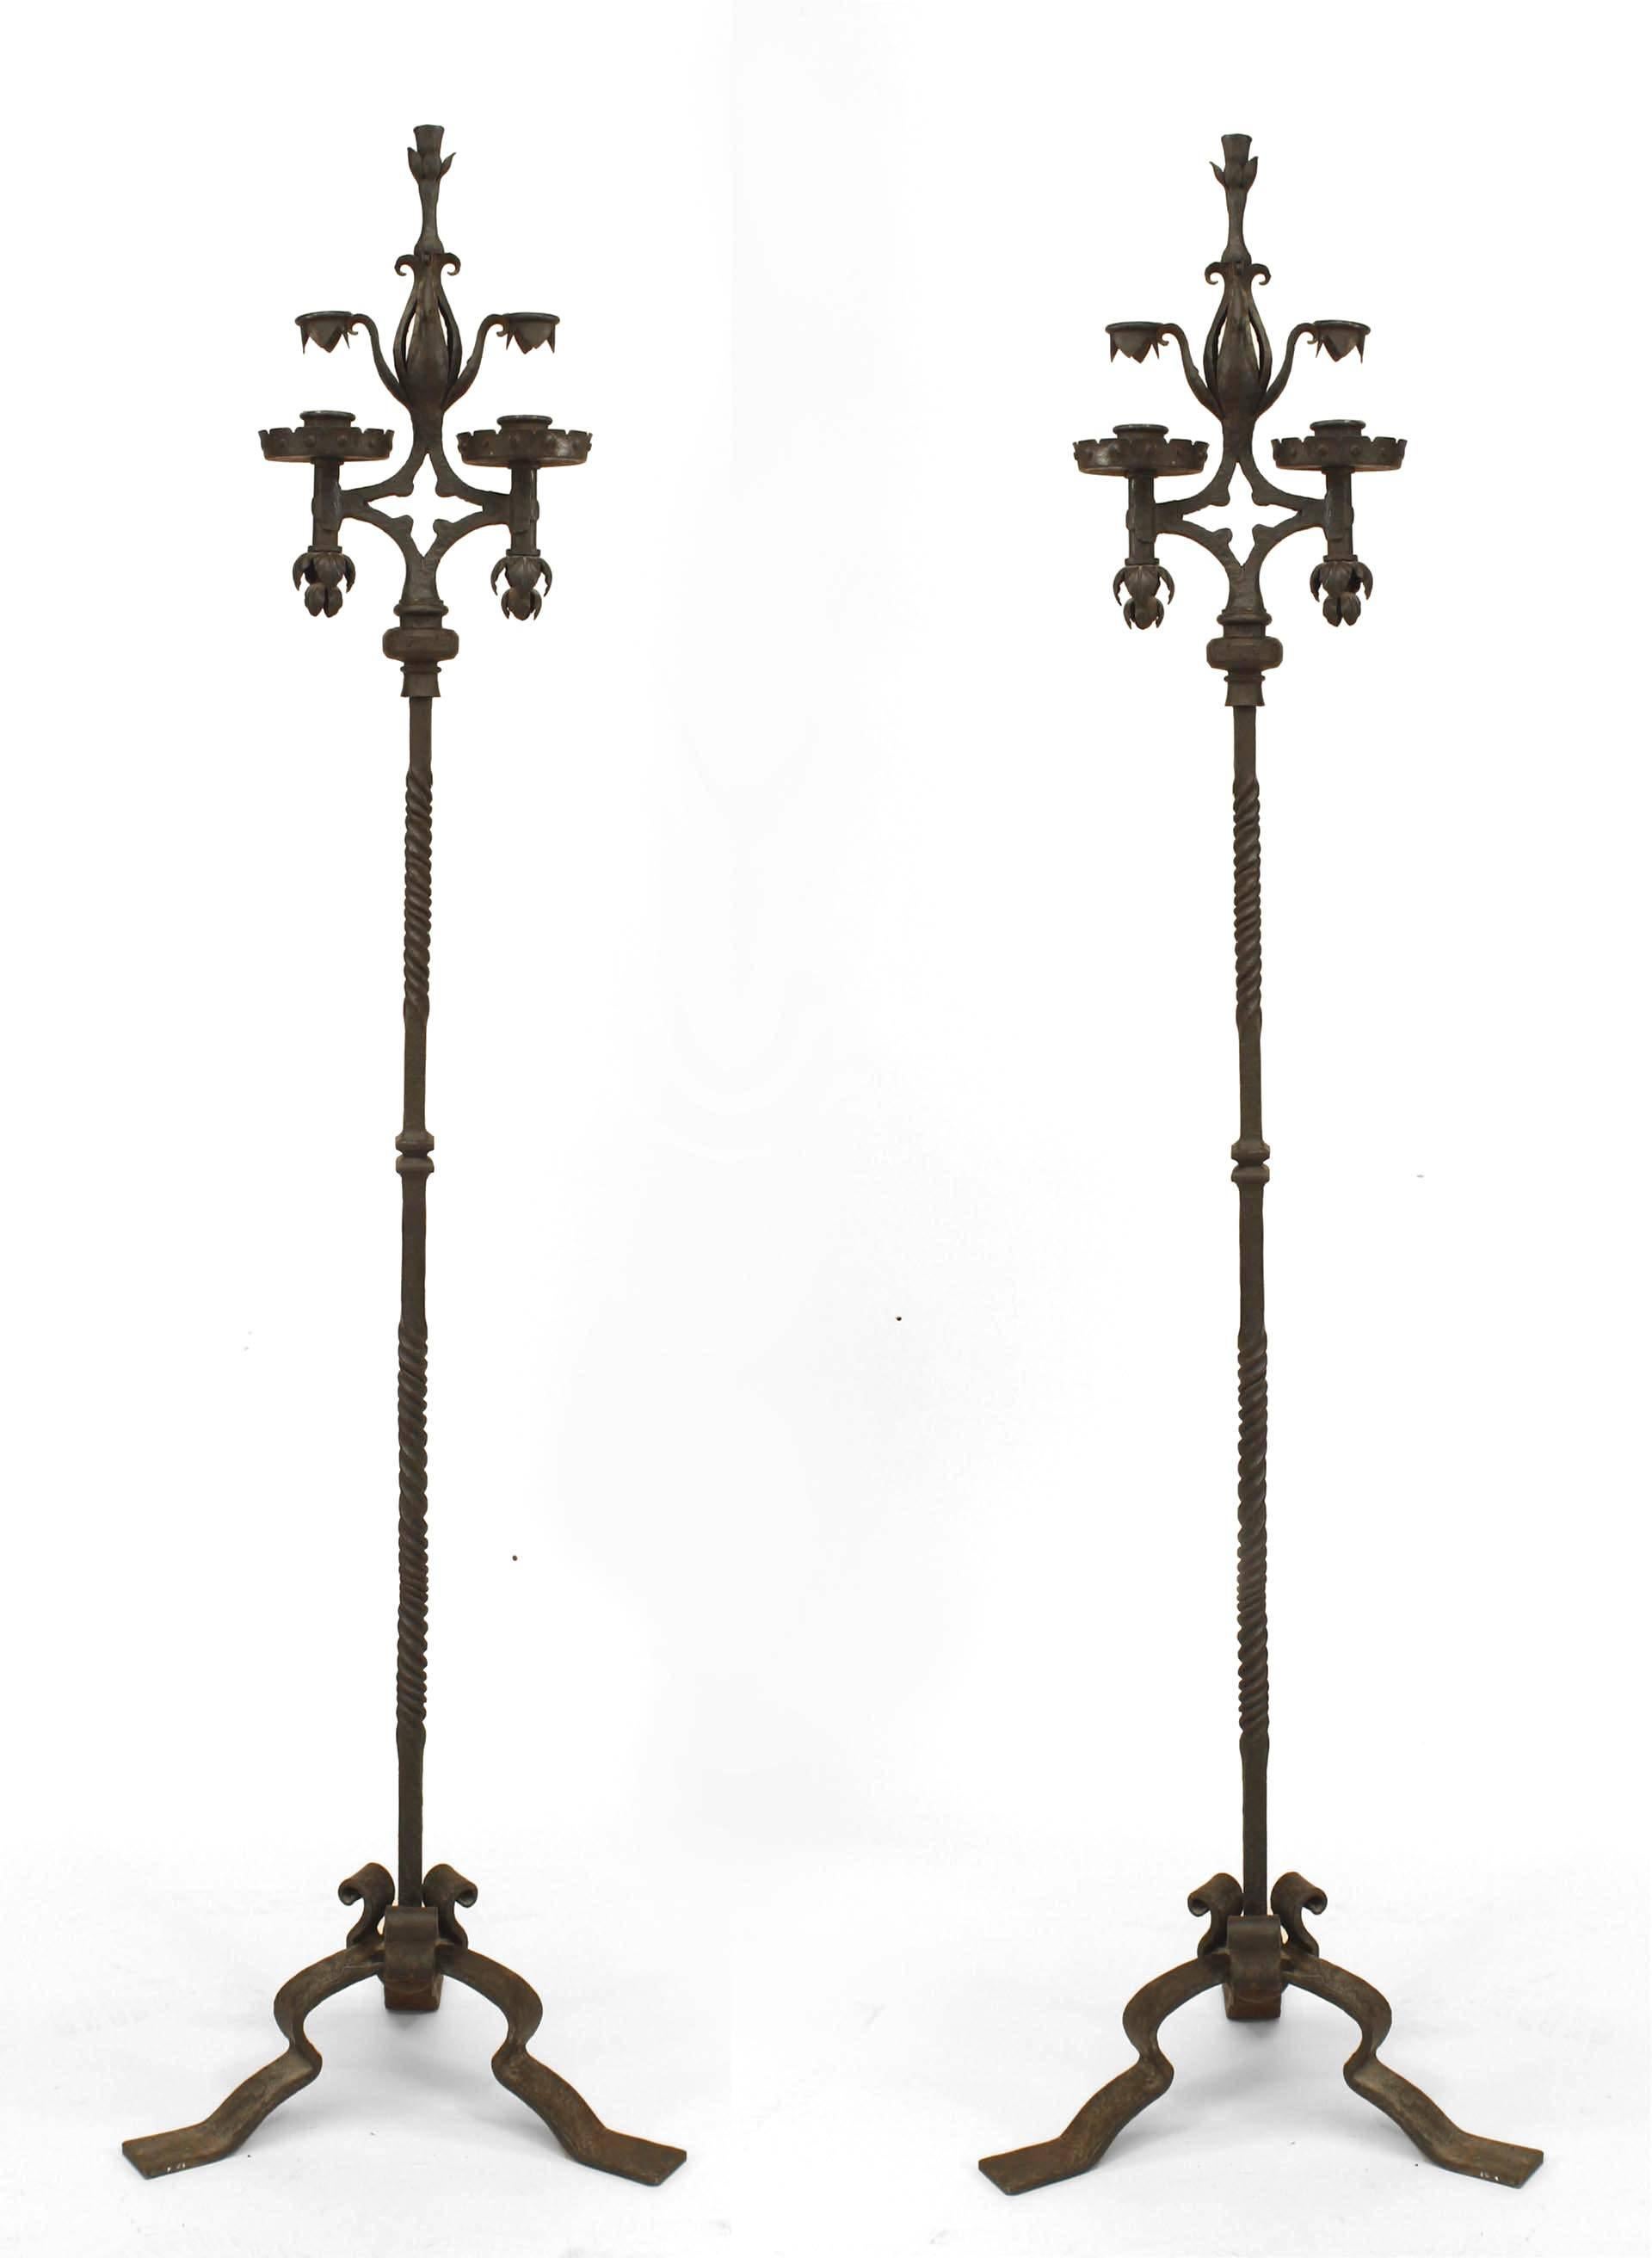 Paire de chandeliers à deux lumières en fer forgé de style Victorien français (19ème/20ème siècle) avec des détails feuillus supportés par 3 pieds (PRIX PAR PAIRE).
